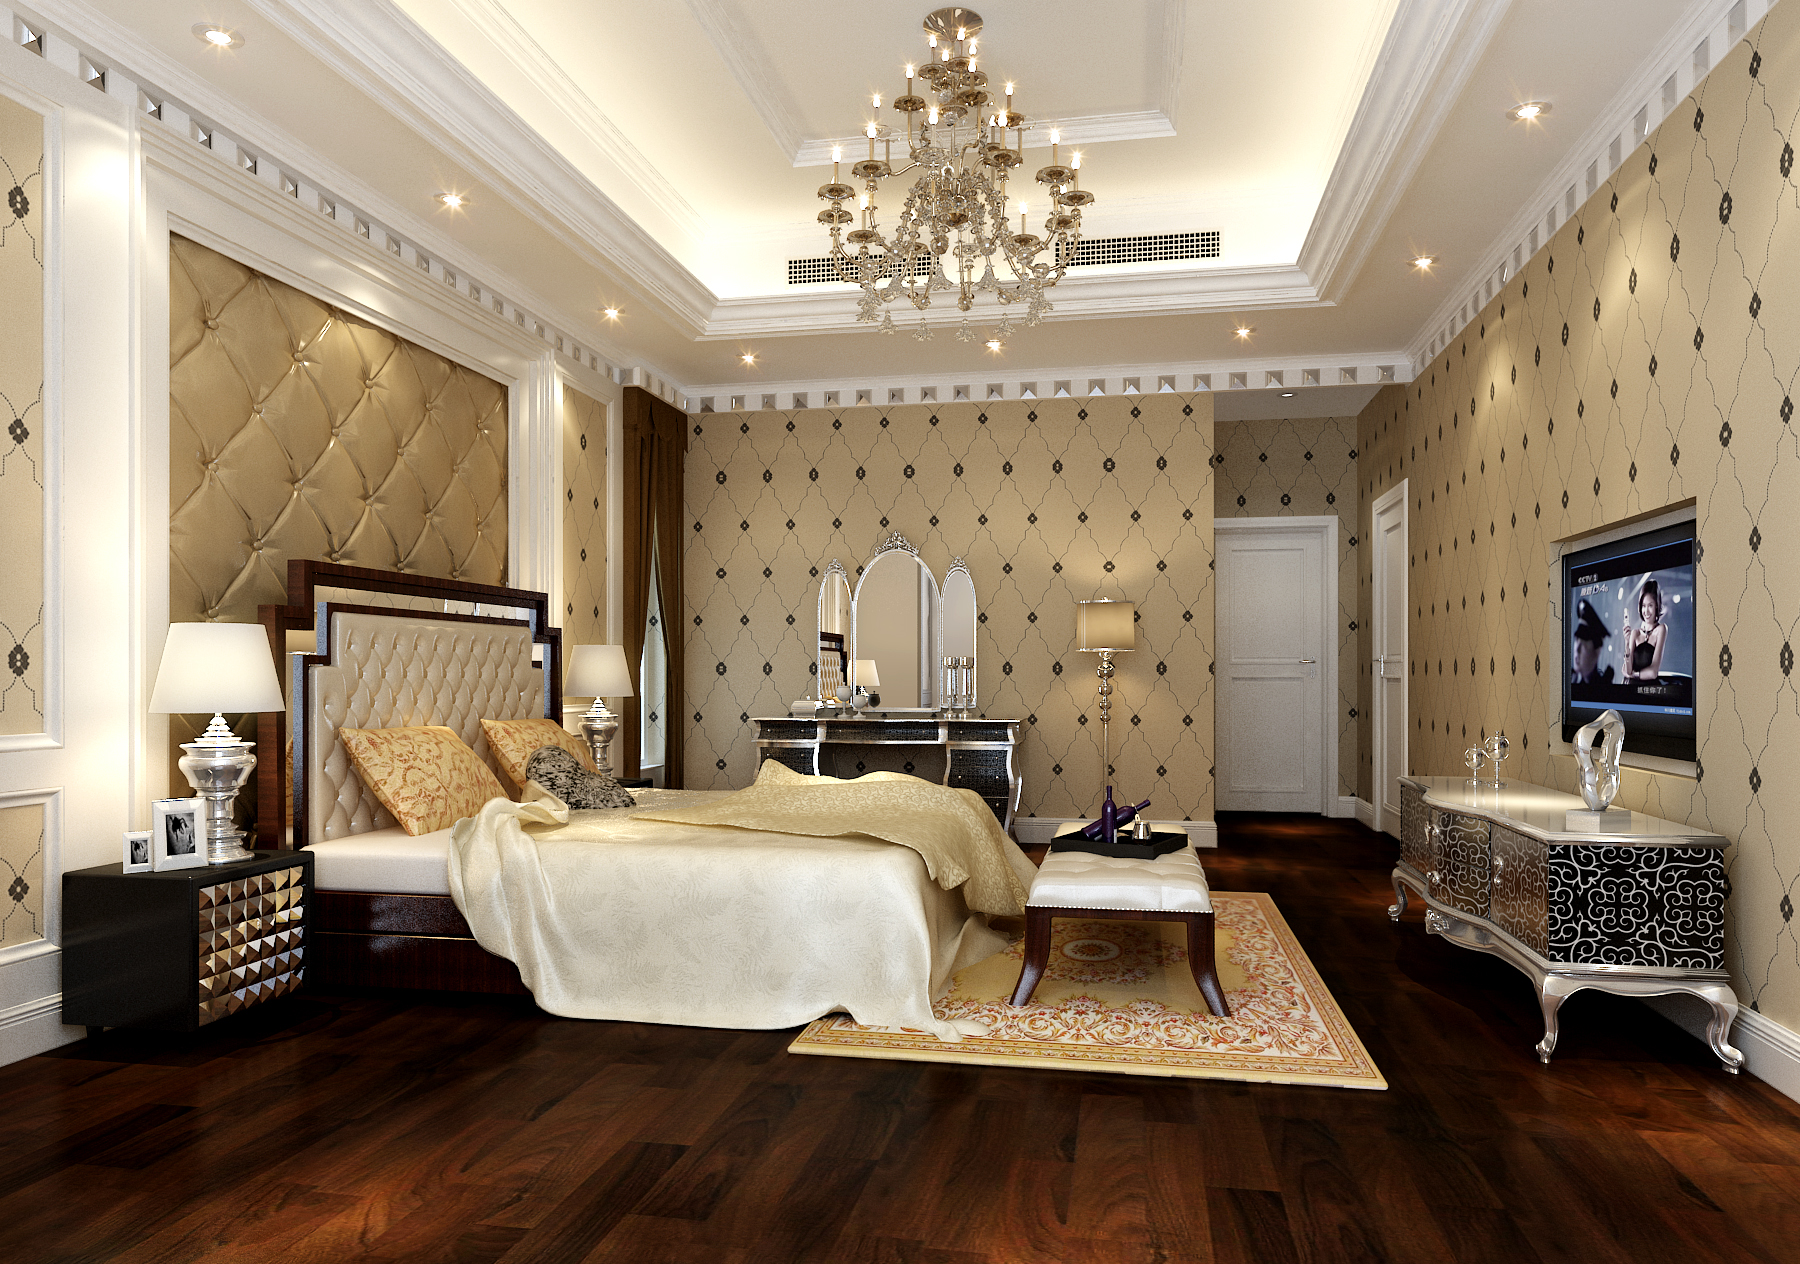 欧式 古典 原创国际 品质 墅装 全案设计 卫生间图片来自原创国际别墅装饰在和桥丽晶的分享